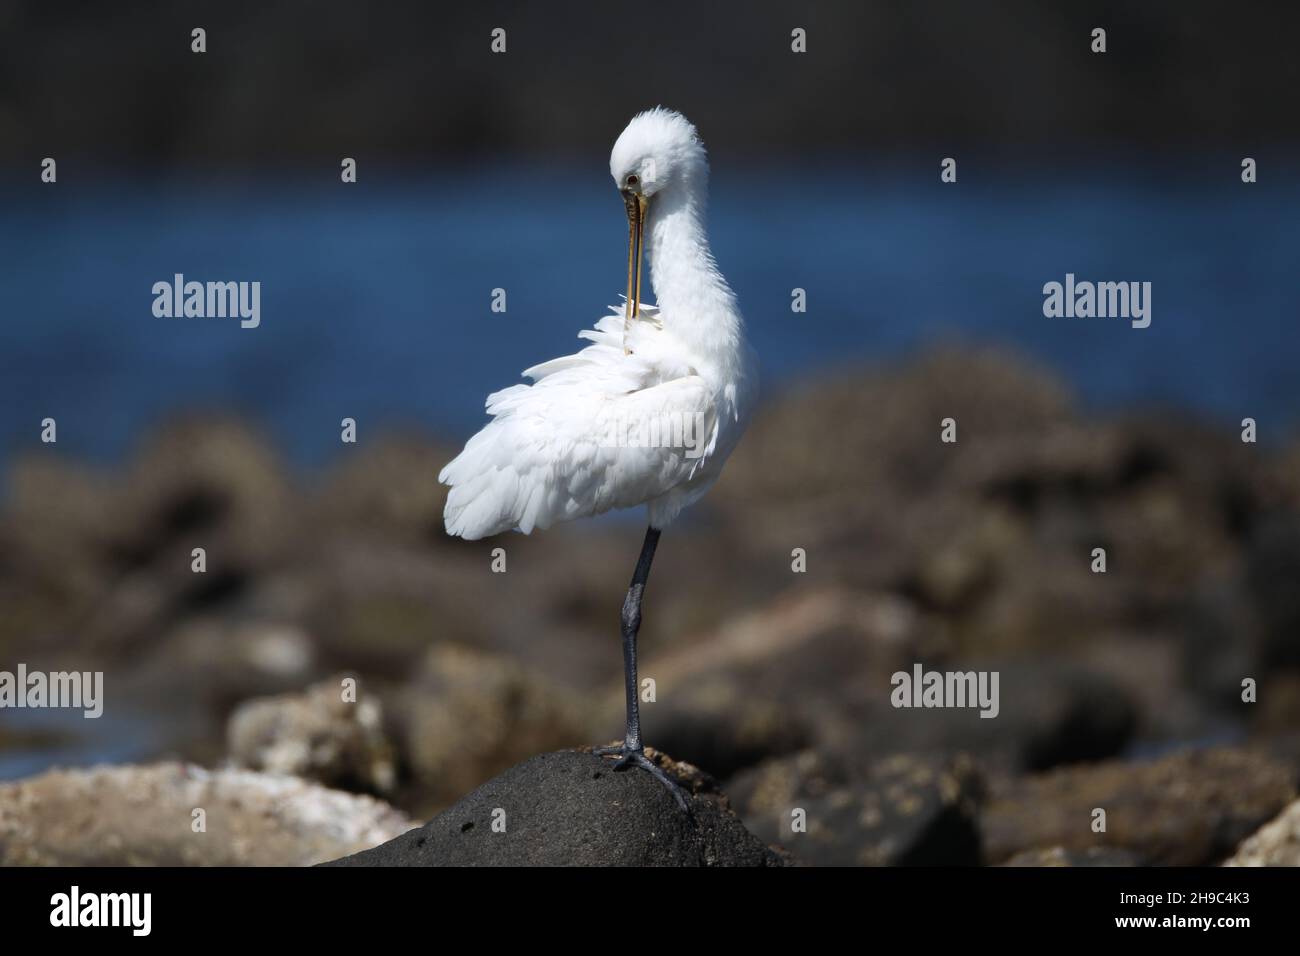 Ci sono un certo numero di spoonbill su Lanzarote dove Inverno e migrano attraverso altre stagioni. Un grosso uccello acquatico bianco con becco a forma di cucchiaio. Foto Stock